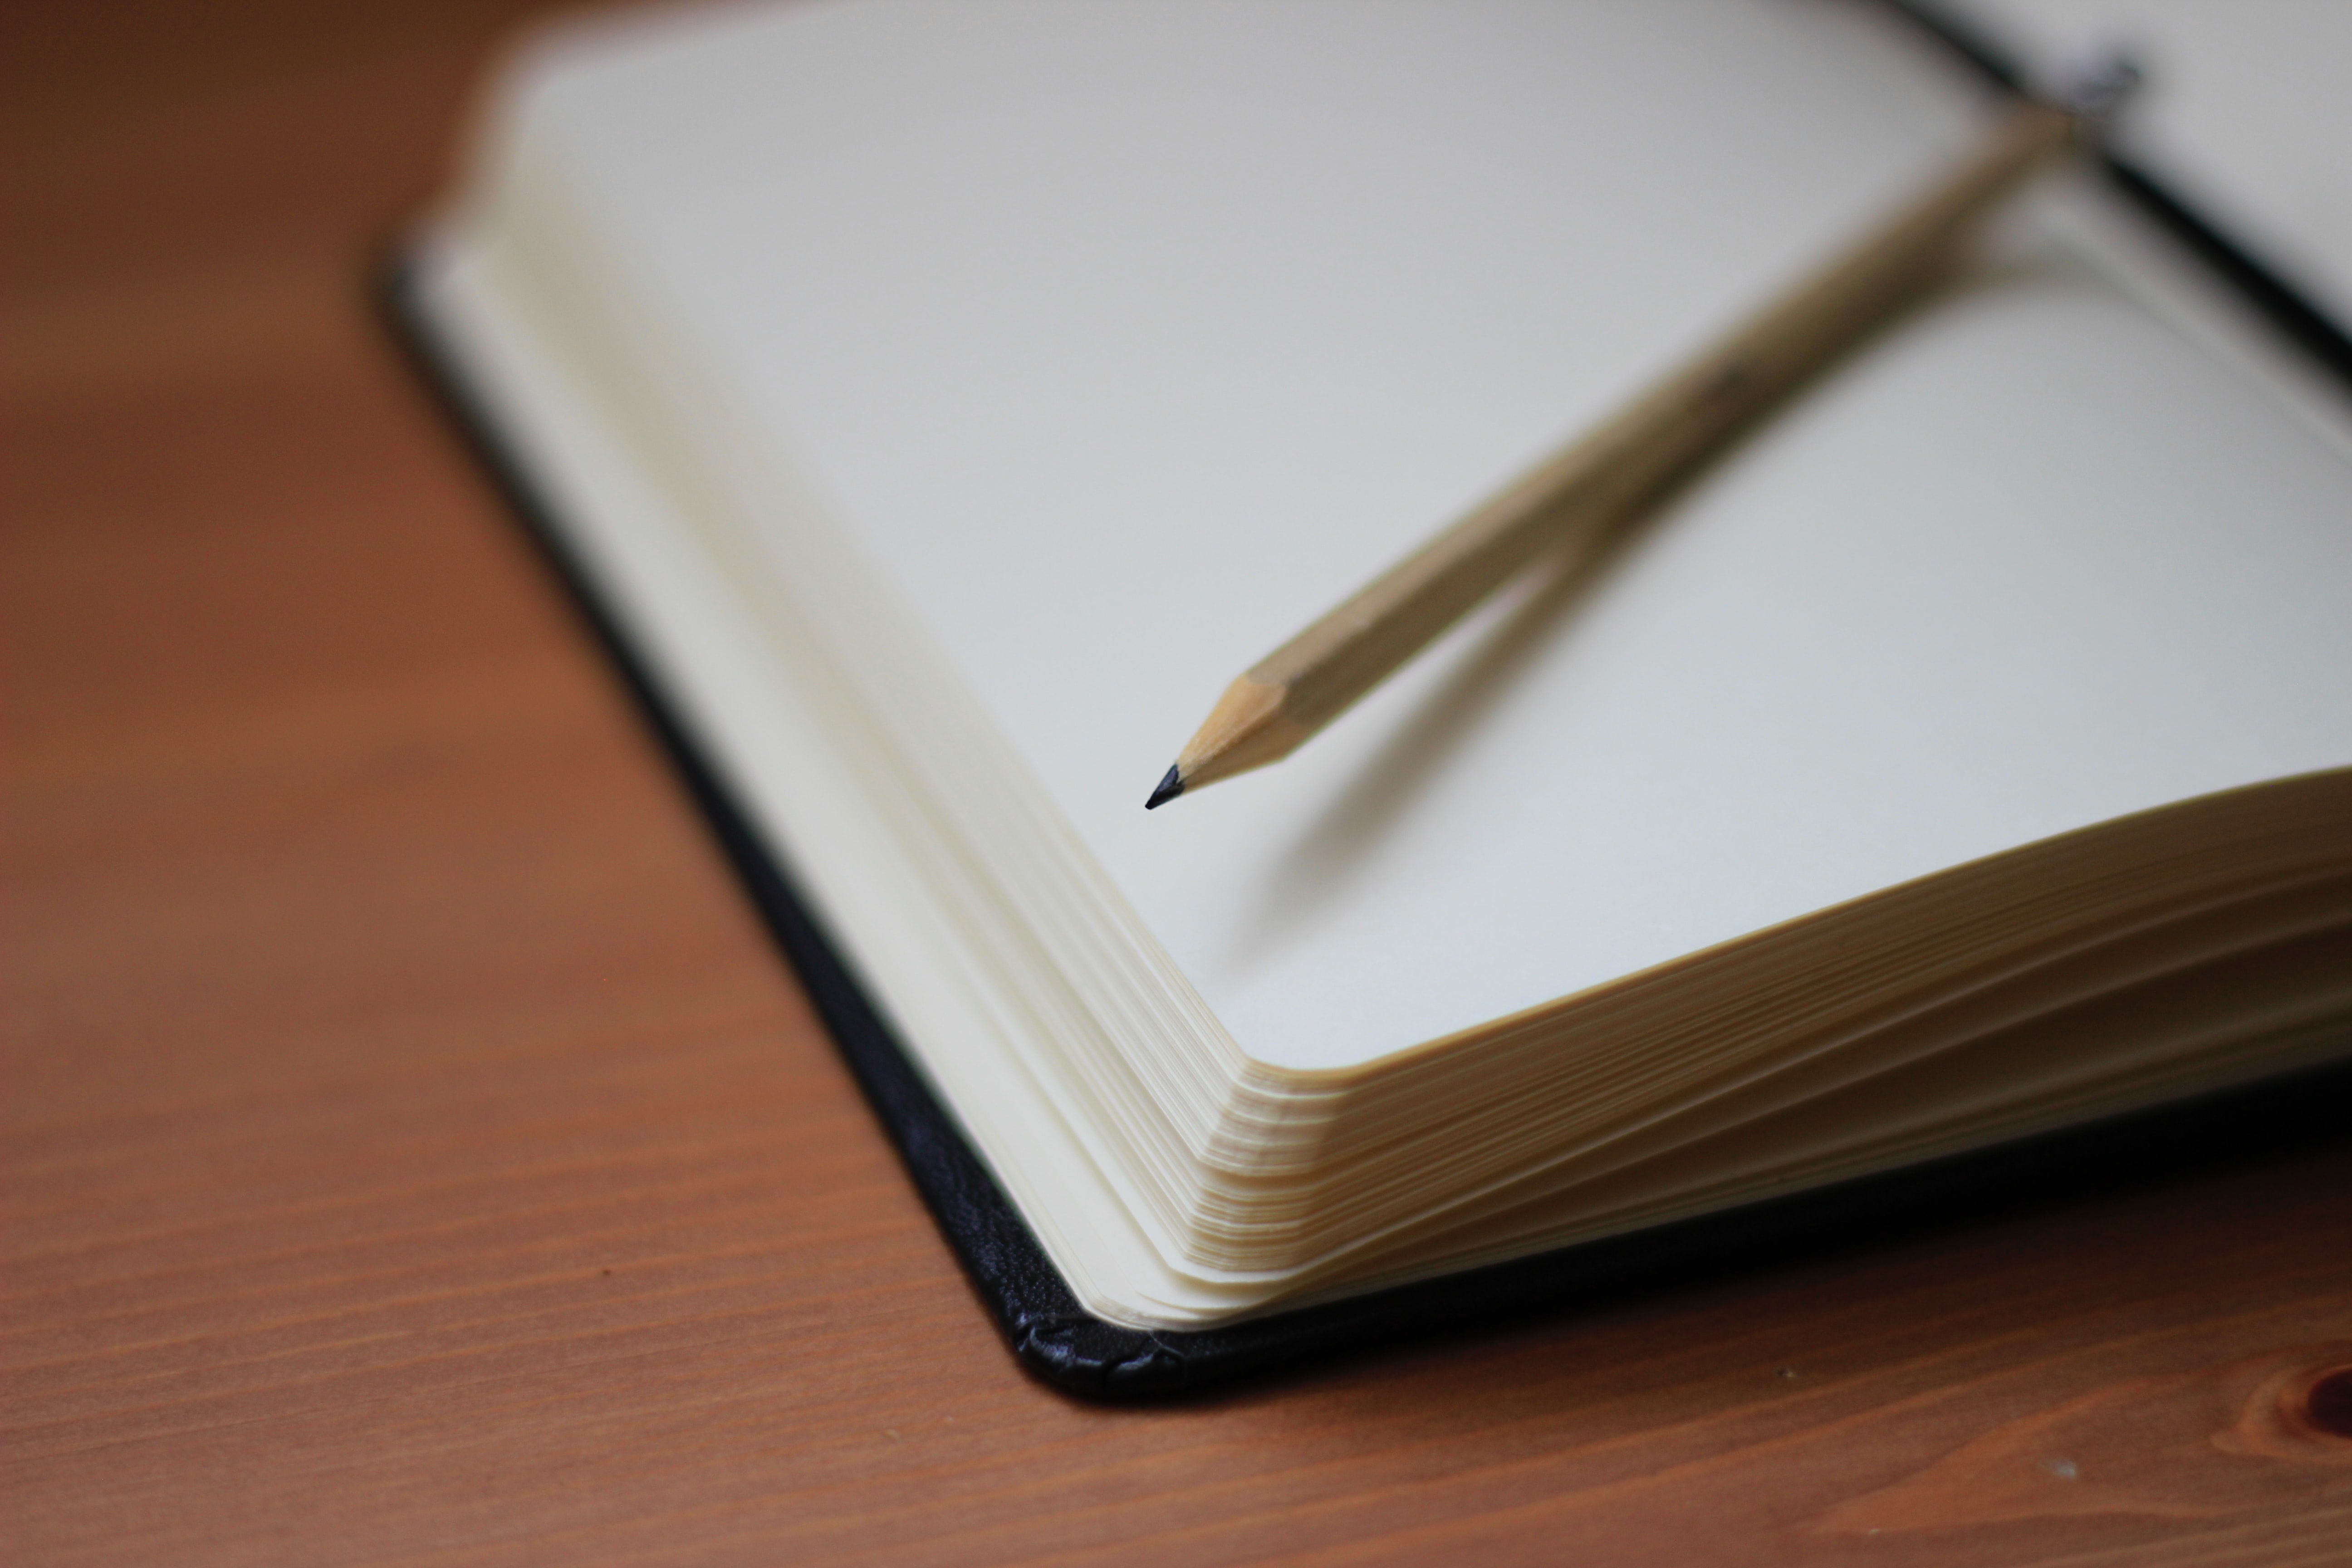 Imagem de um caderno aberto sobre uma mesa e com um lápis sobre a página aberta.